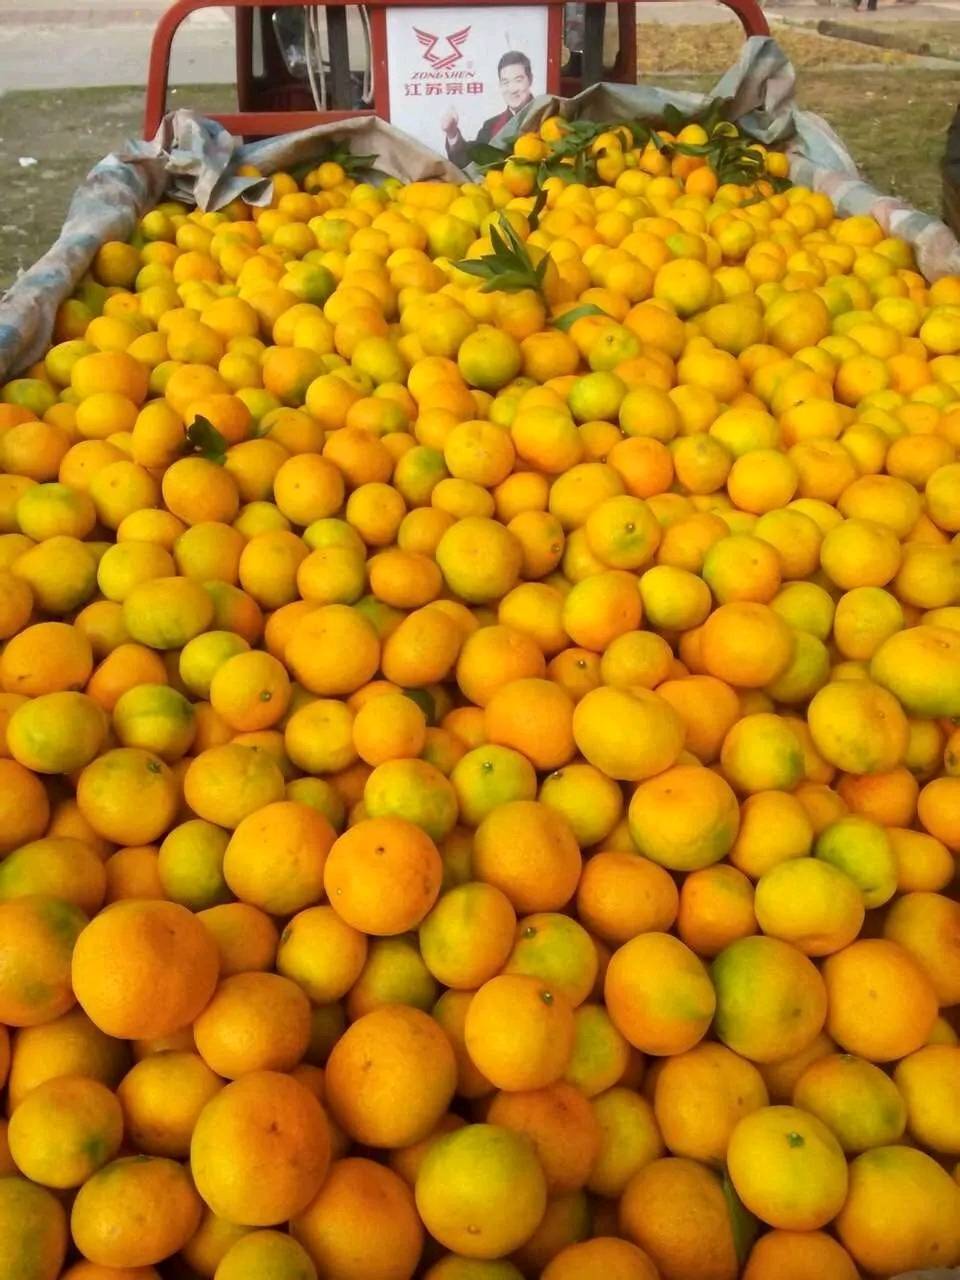 大量橘子寻找货主，地点陕西汉中市城固县老庄镇，已经干了五六年代办，提供吃饭和住处，环境整洁，当场验收橘子，老板有意可与我联系。